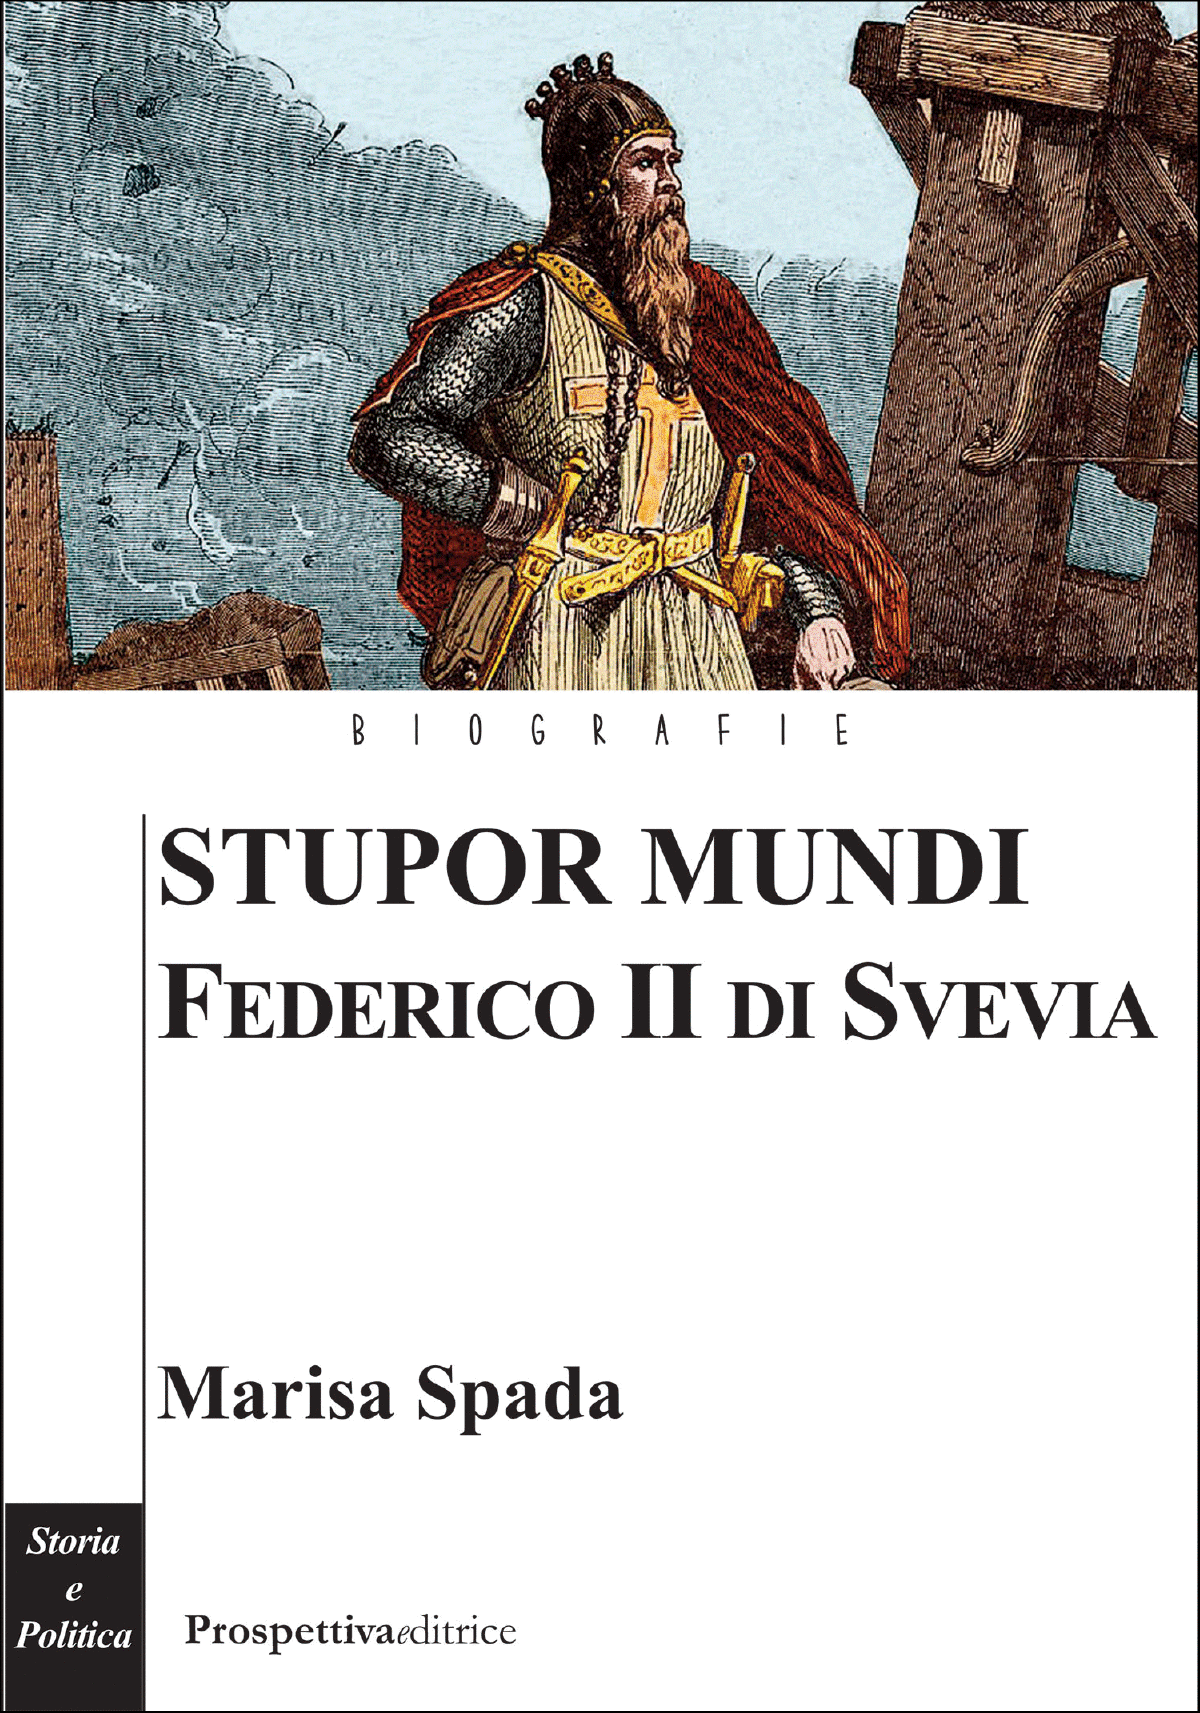 Stupor Mundi Federico II di Svevia